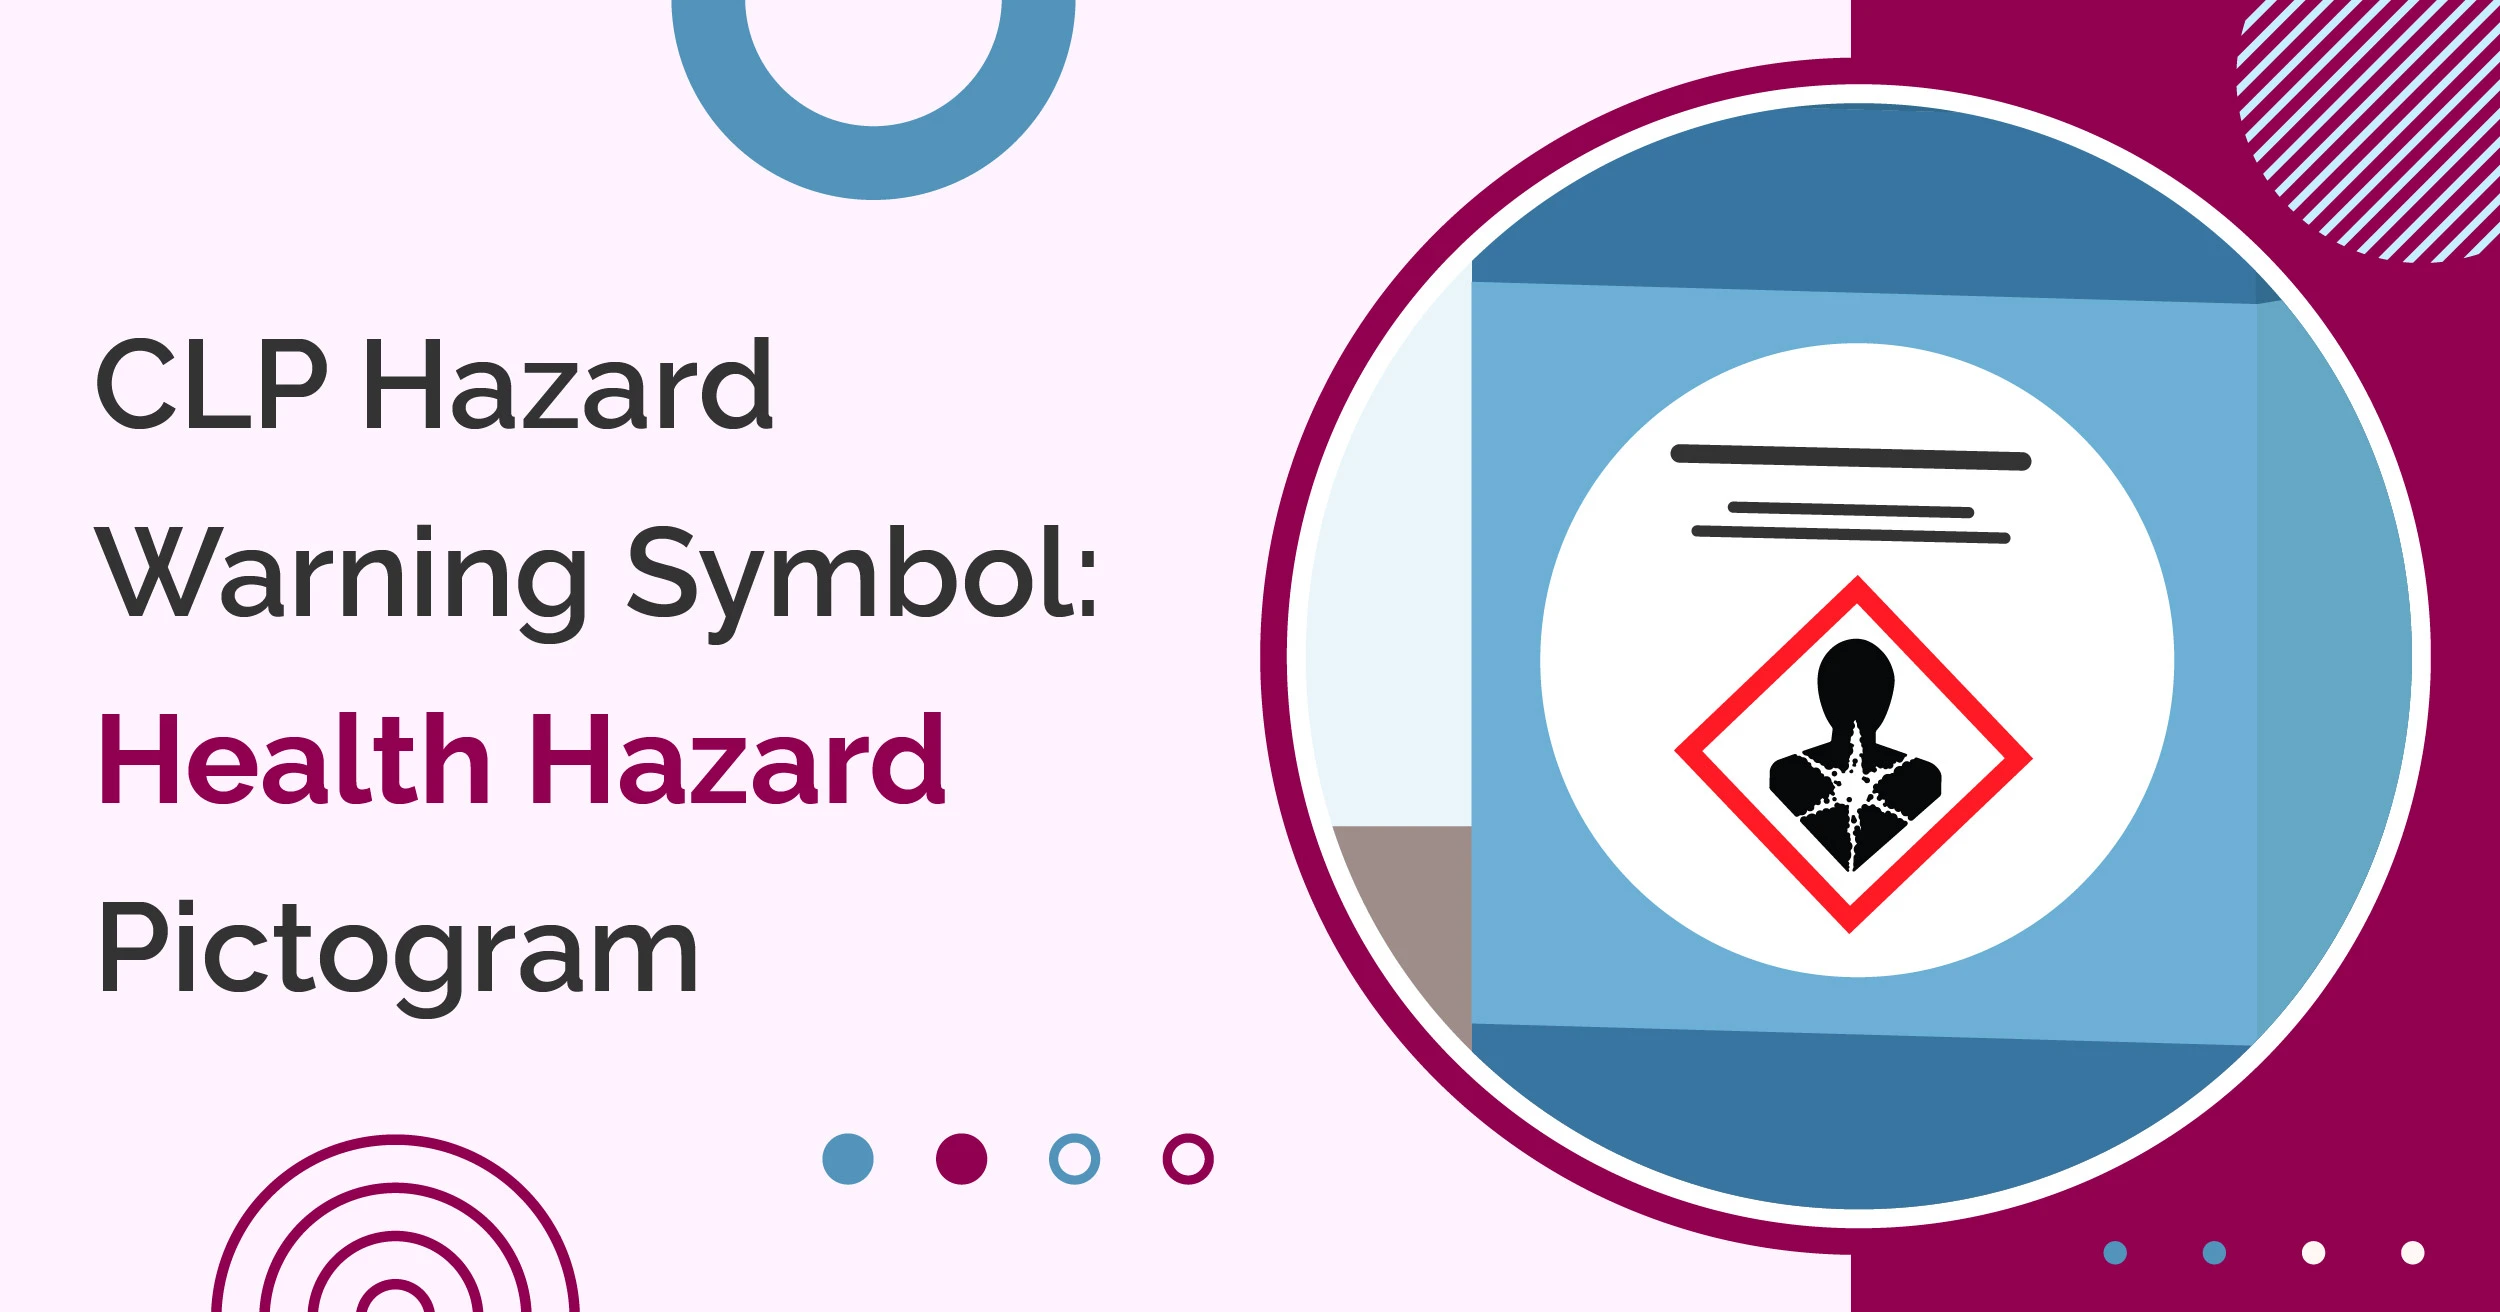 CLP Hazard Warning Symbol: Health Hazard Pictogram